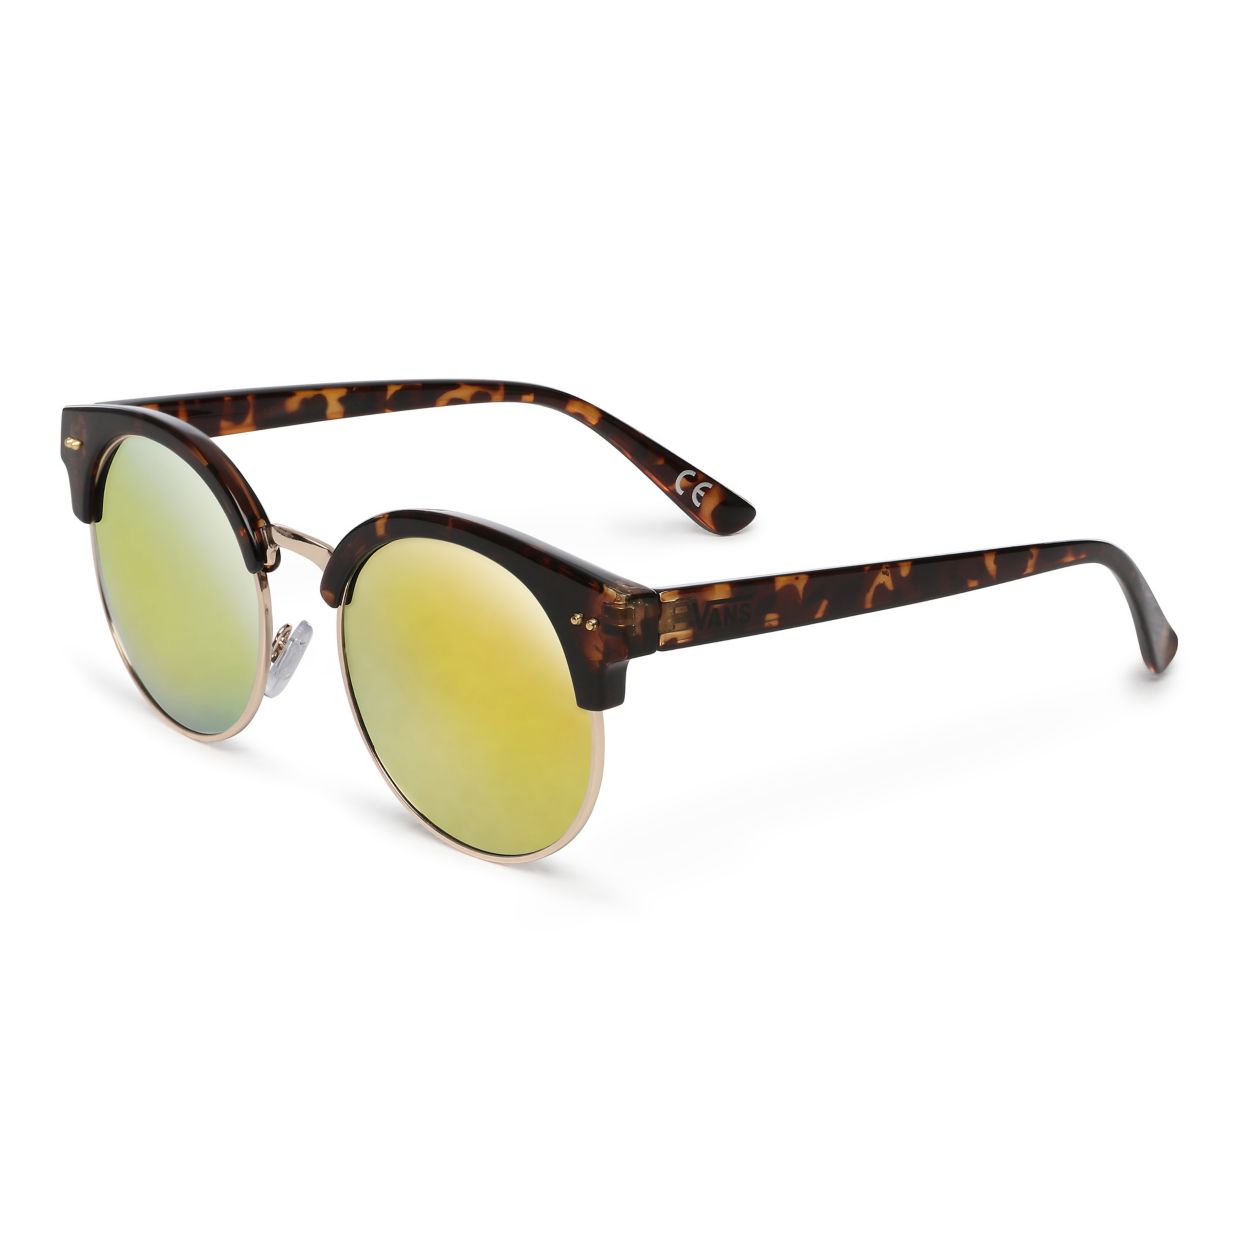 Vans - Rays For Daze Sunglasses - Tortoise Sunset Mirror Lens.